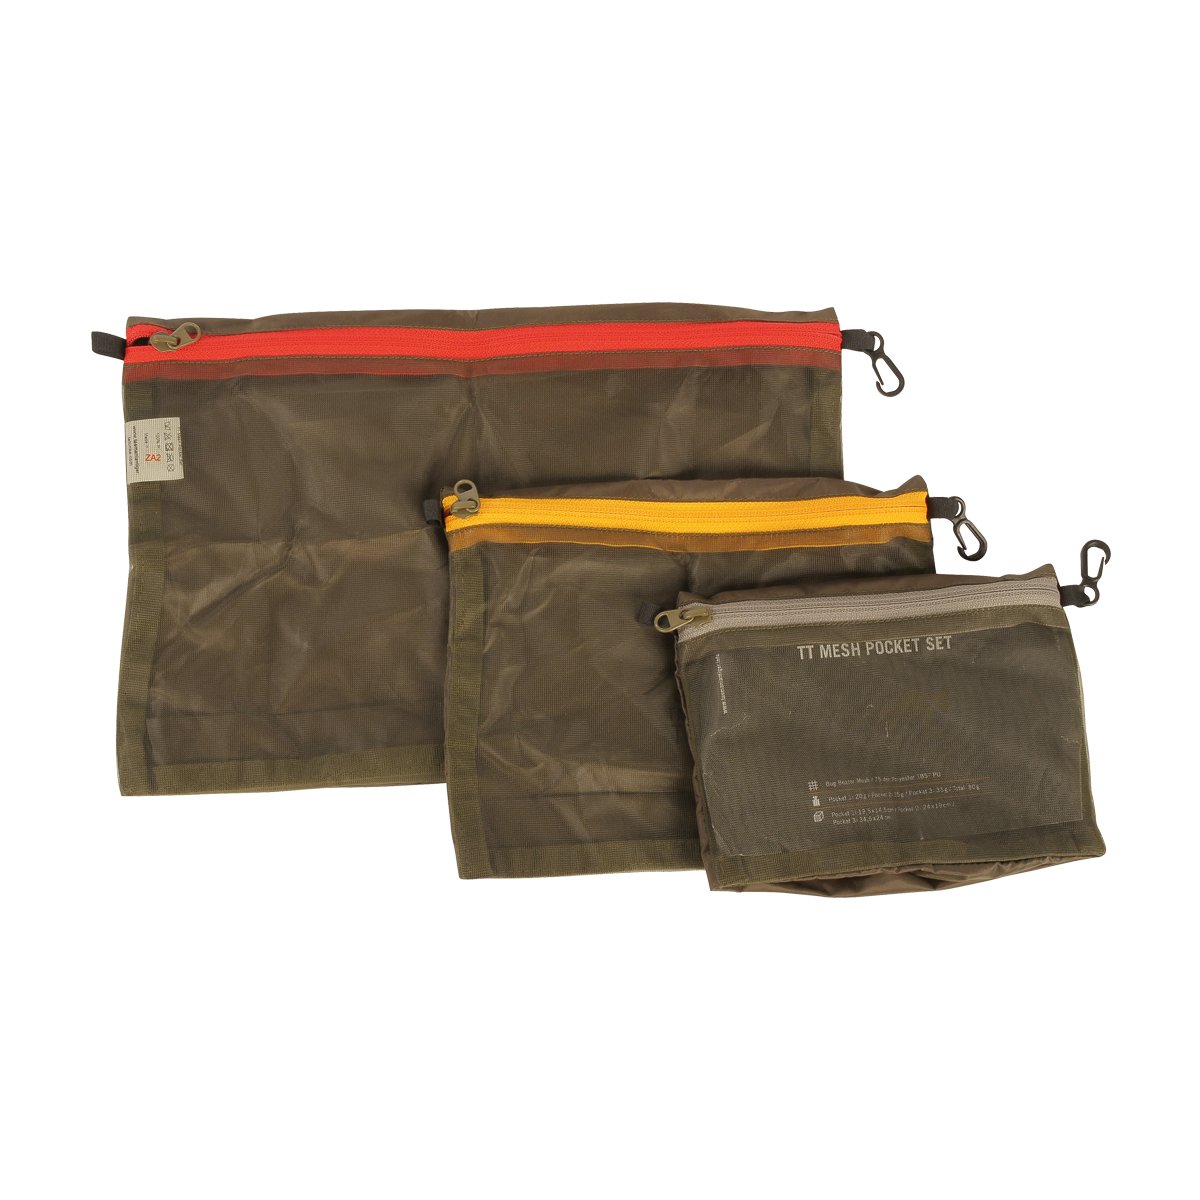 Produktbild von Tasmanian Tiger TT Mesh Pocket Set - Innentaschen-Set für Rucksäcke